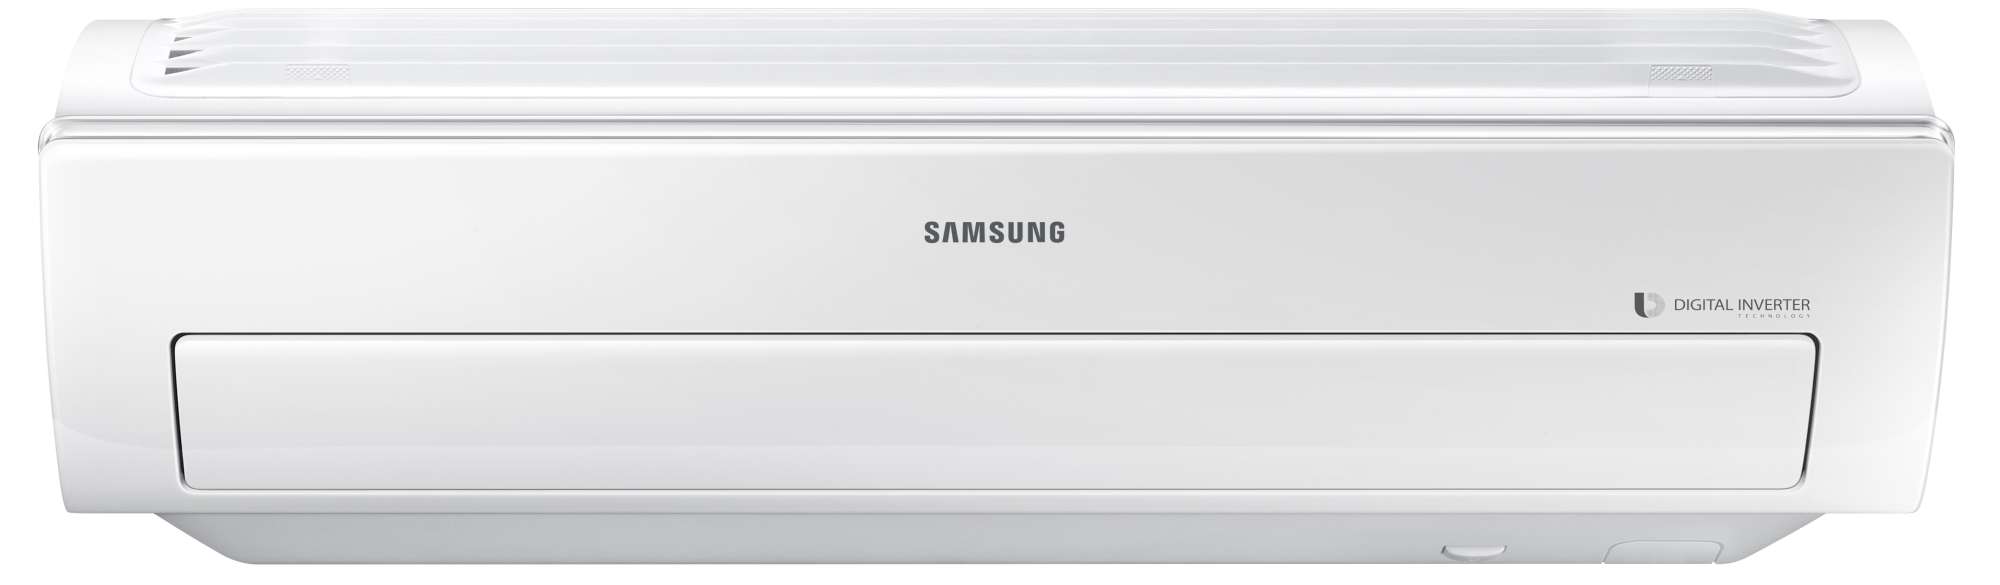 Samsung AR09KSWSJWKNCV Air Conditioner Smart Whisper, 20.5 - 23 SEER Indoor Unit